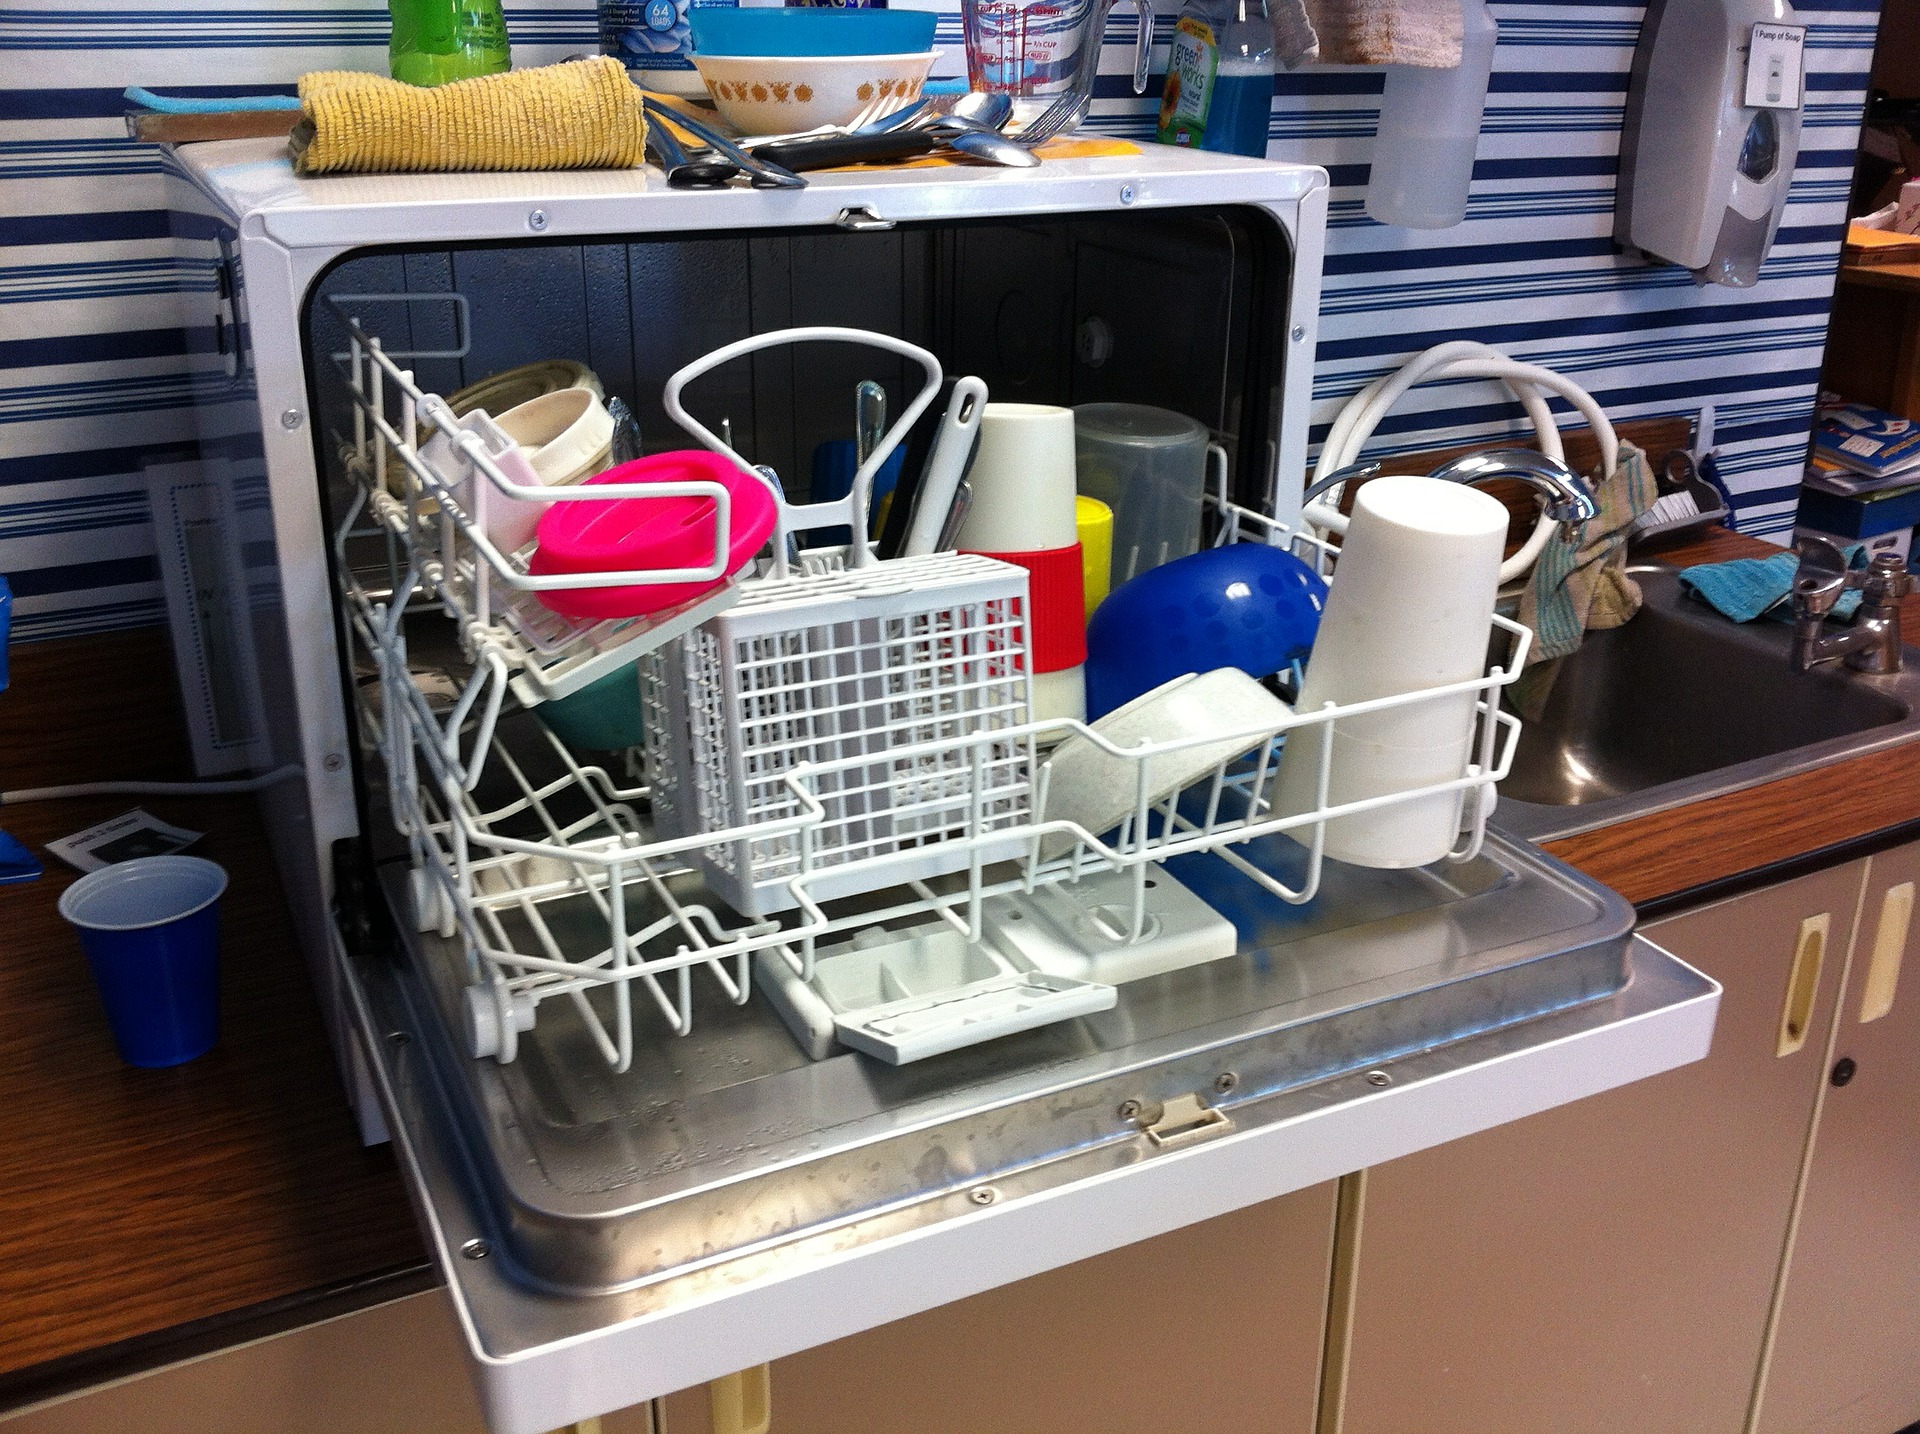 Nettoyer son lave-vaisselle : voici 5 astuces faciles à tester